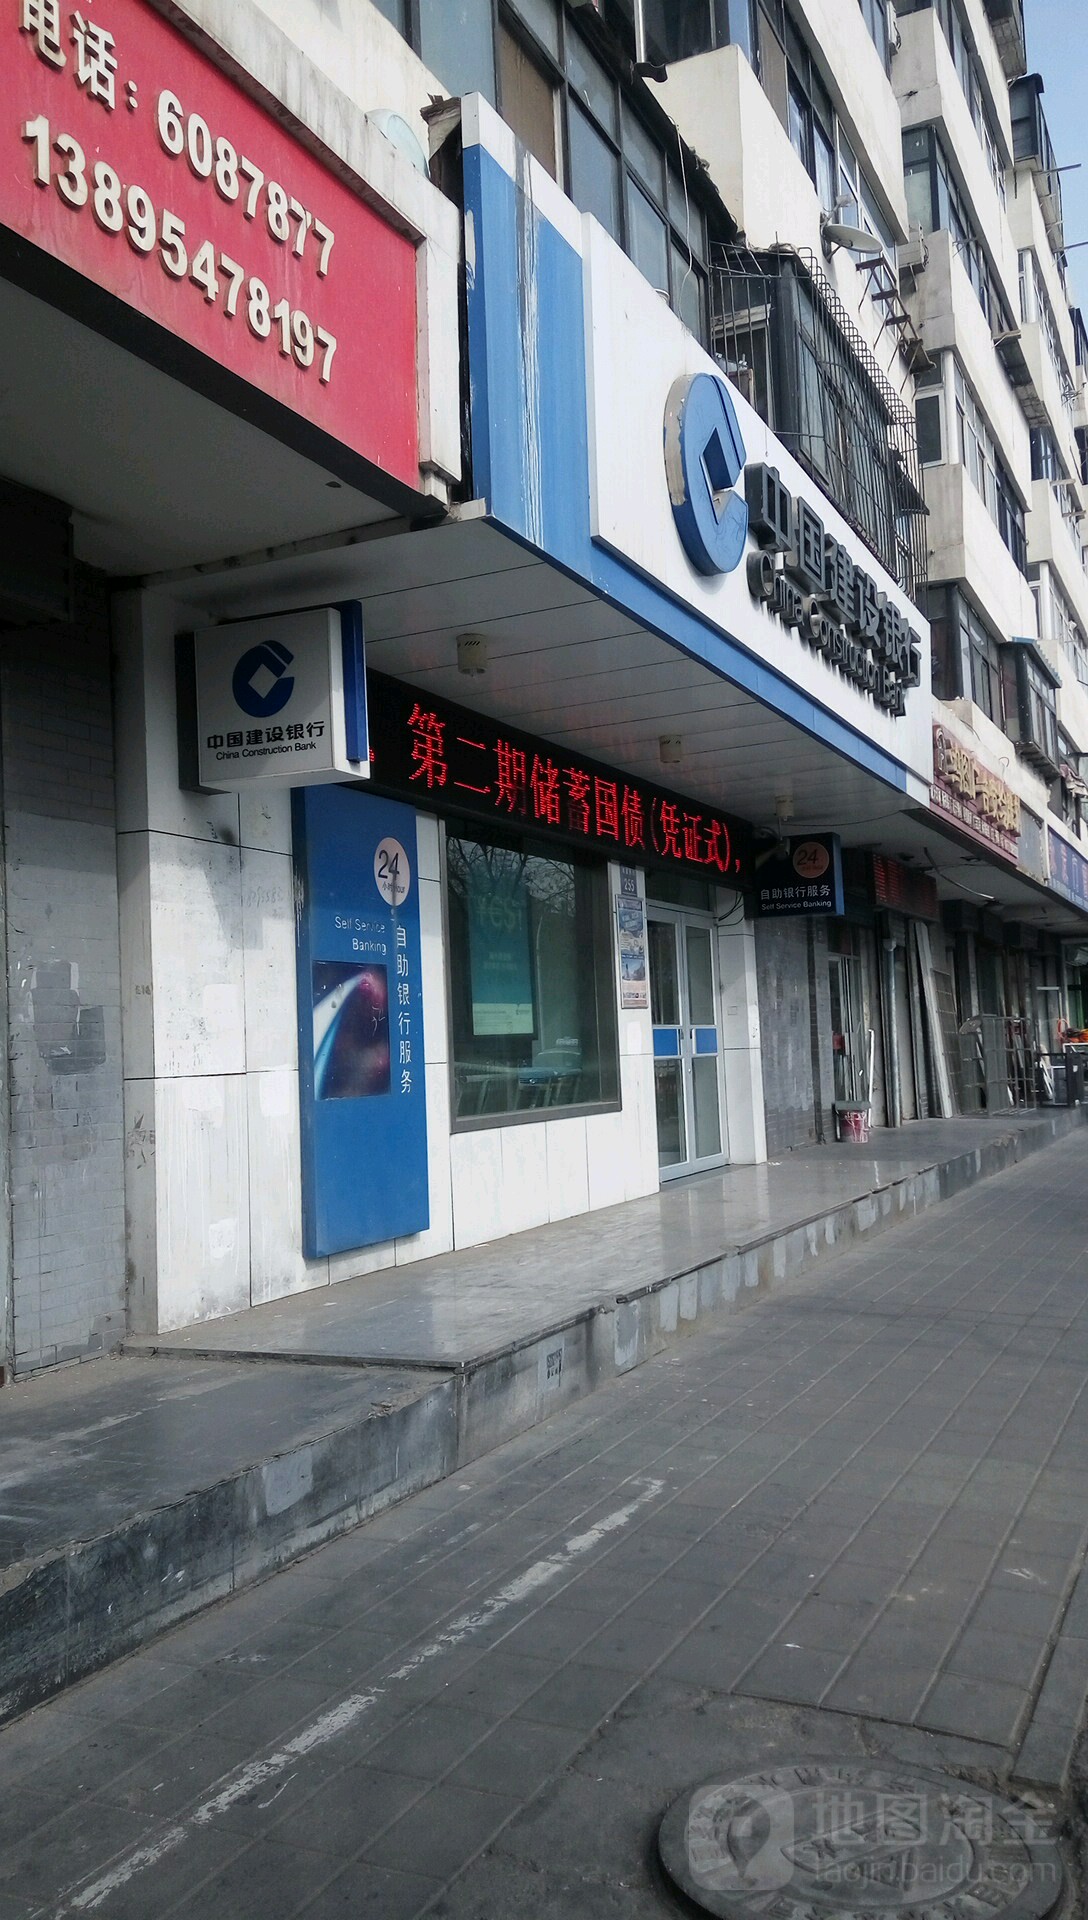 中国建设银行ATM